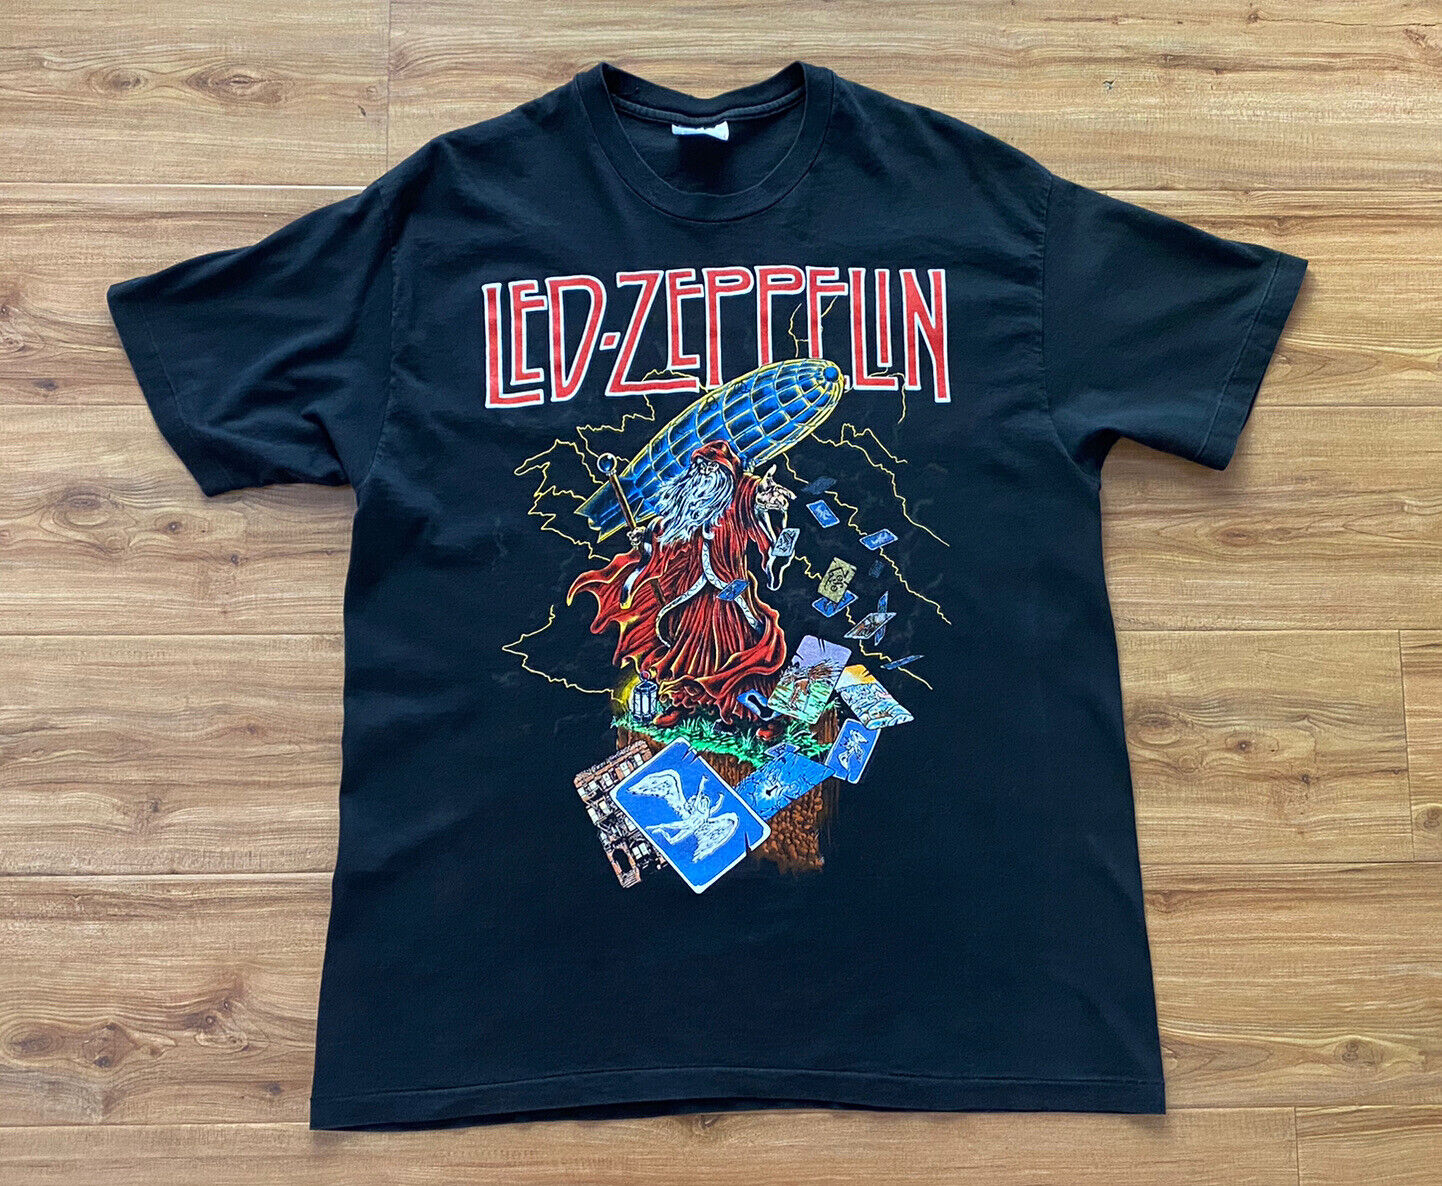 Vintage 1989 Led Zeppelin Wizard Black T-Shirt Size Large VTG 80s Original  Rock